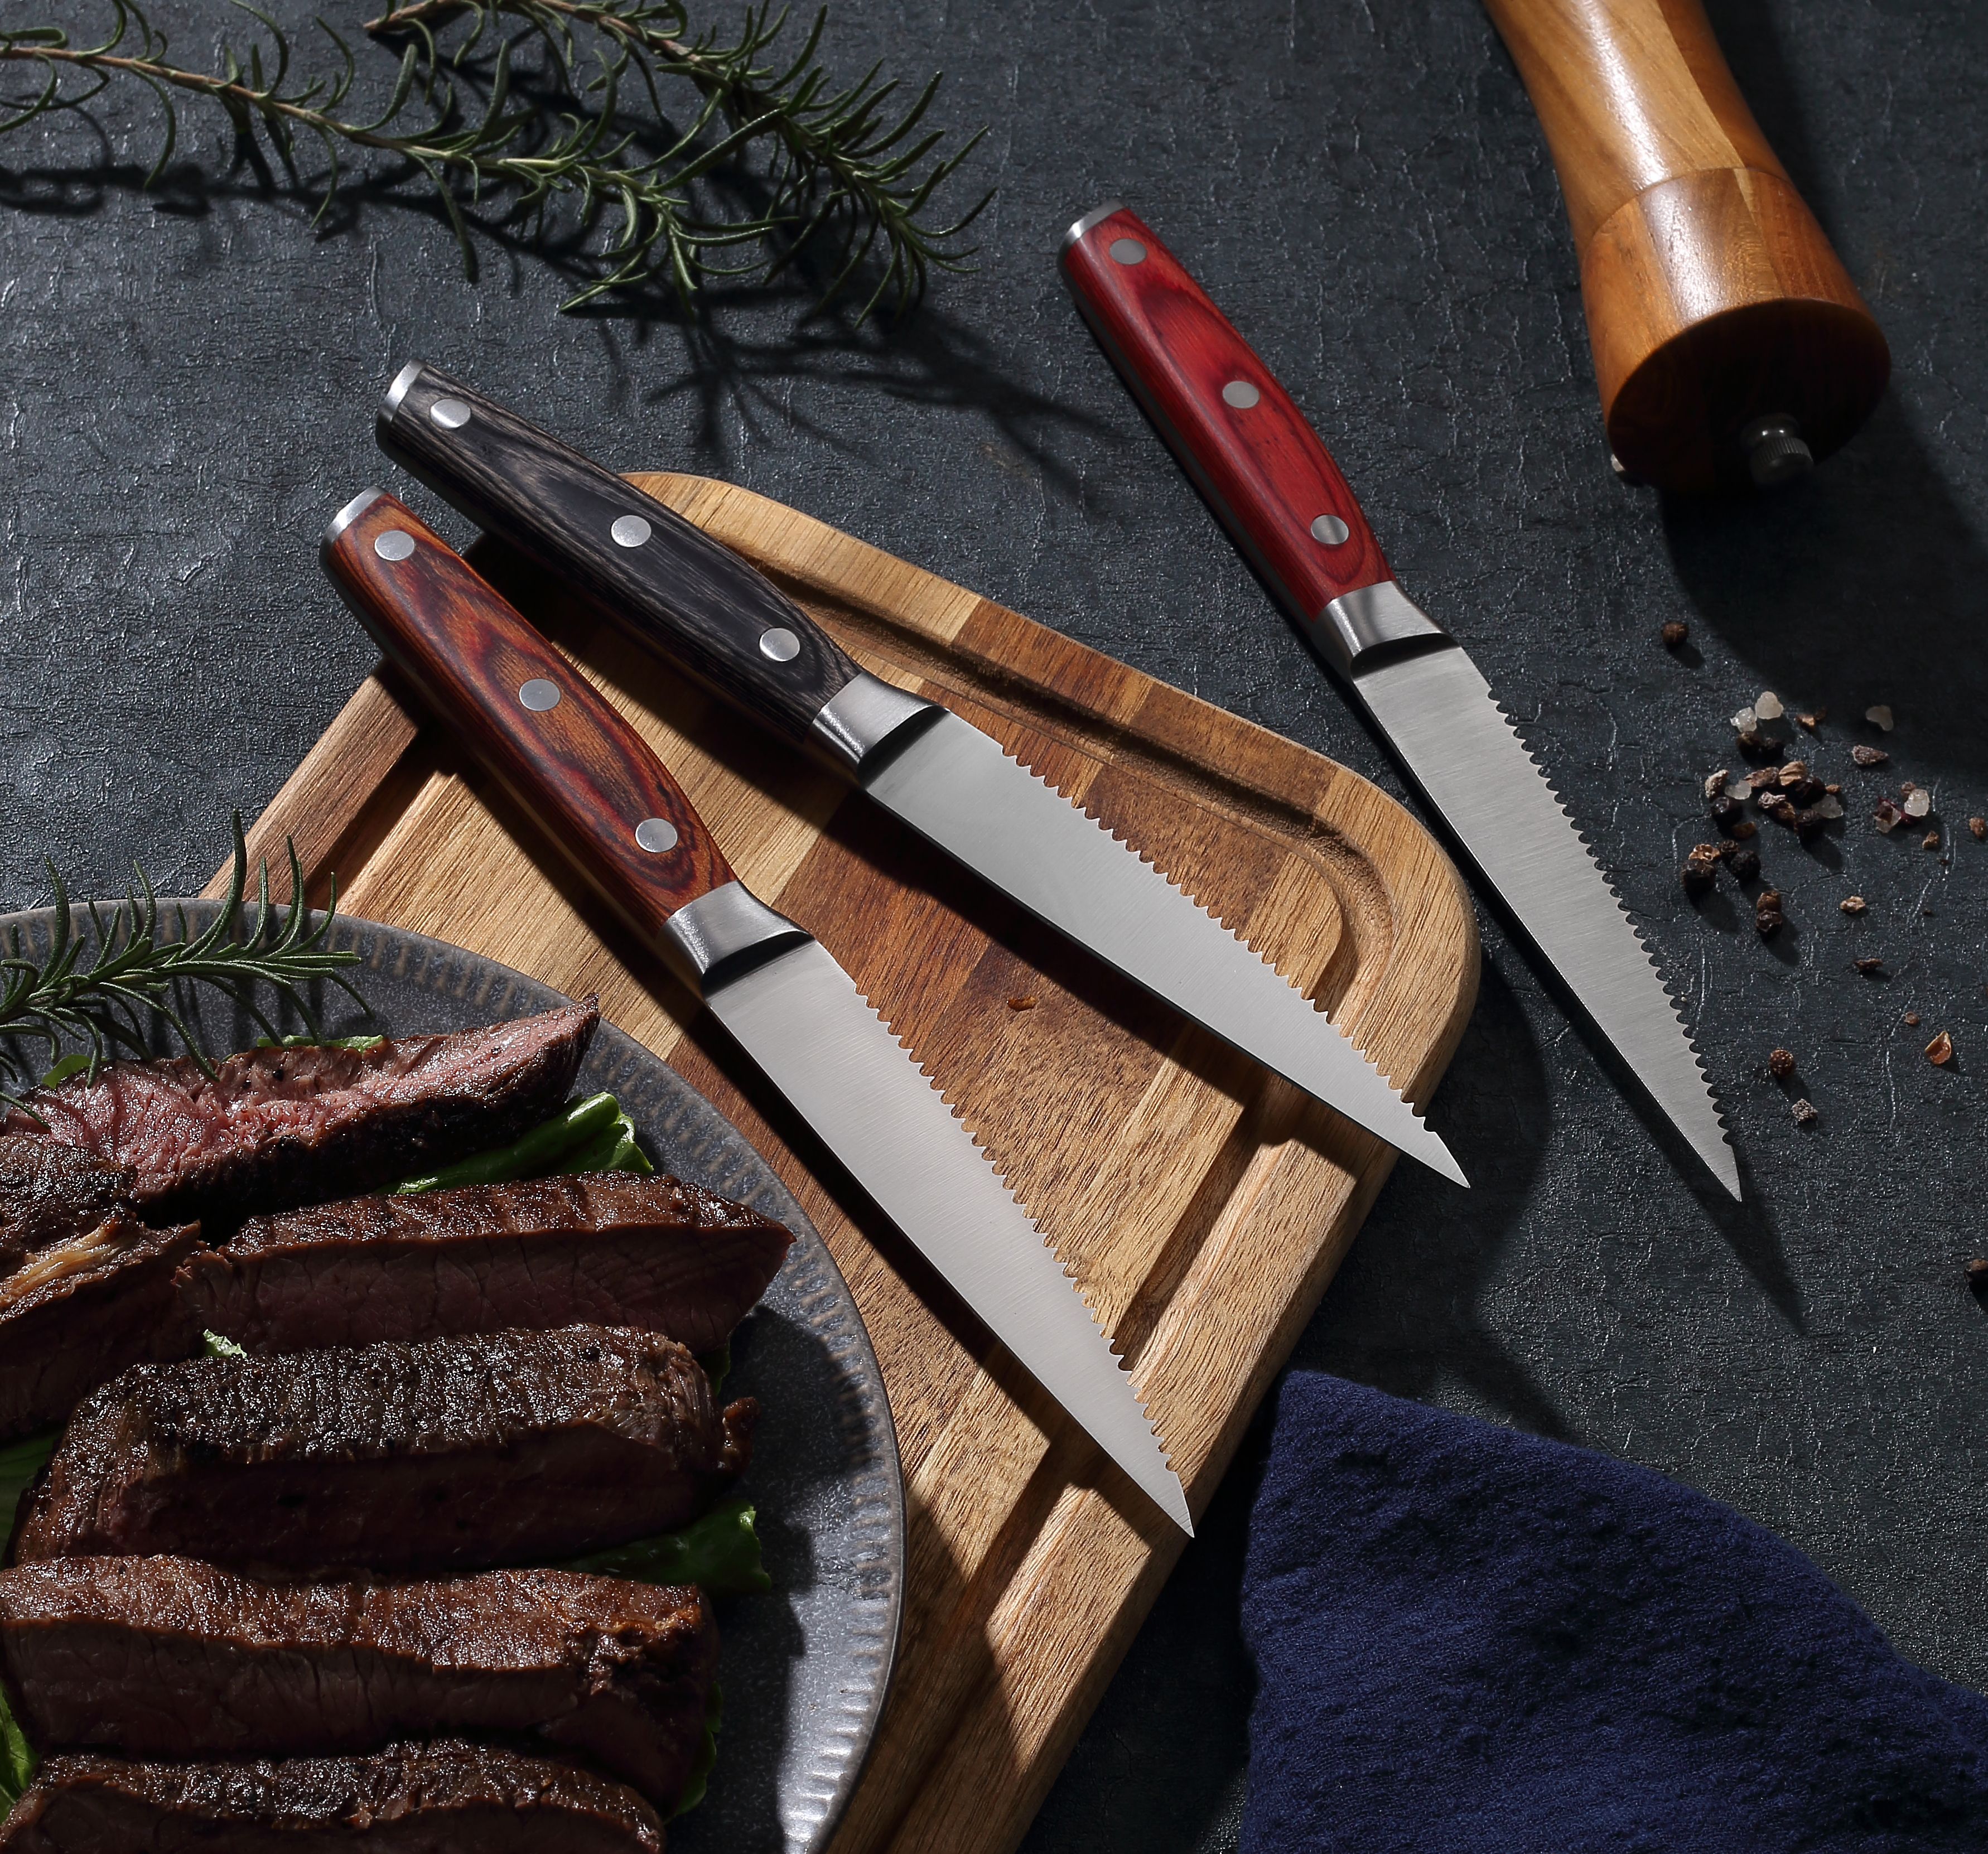 سكاكين شرائح اللحم بمقبض خشبي - مسننة للحصول على قطع دقيقة وتنظيف سهل